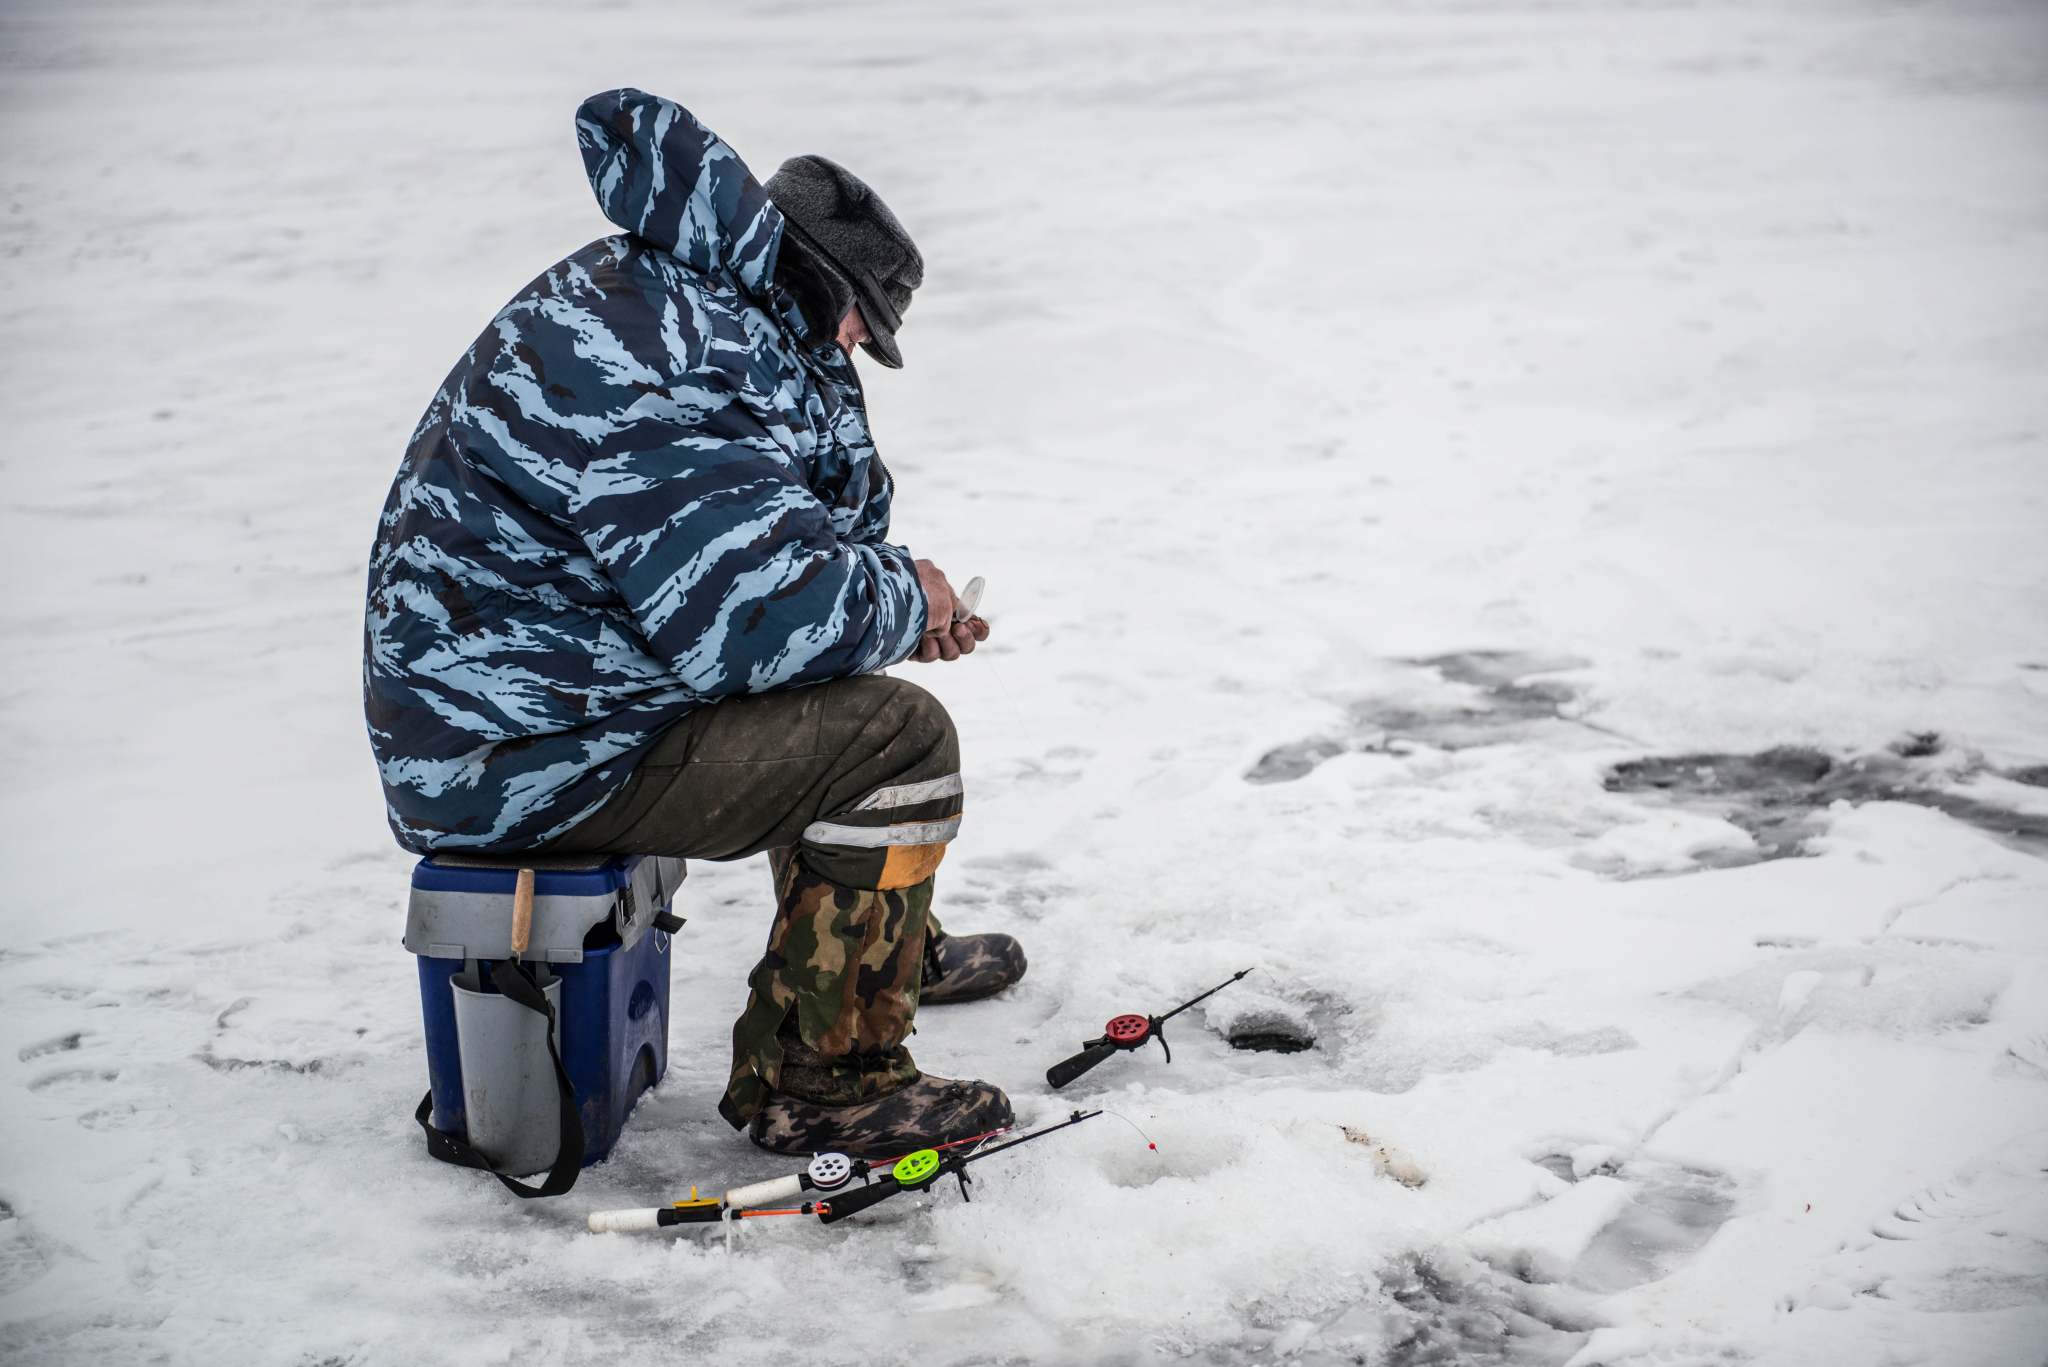 Ловить рыбу запретят на Горьковском водохранилище с 15 апреля